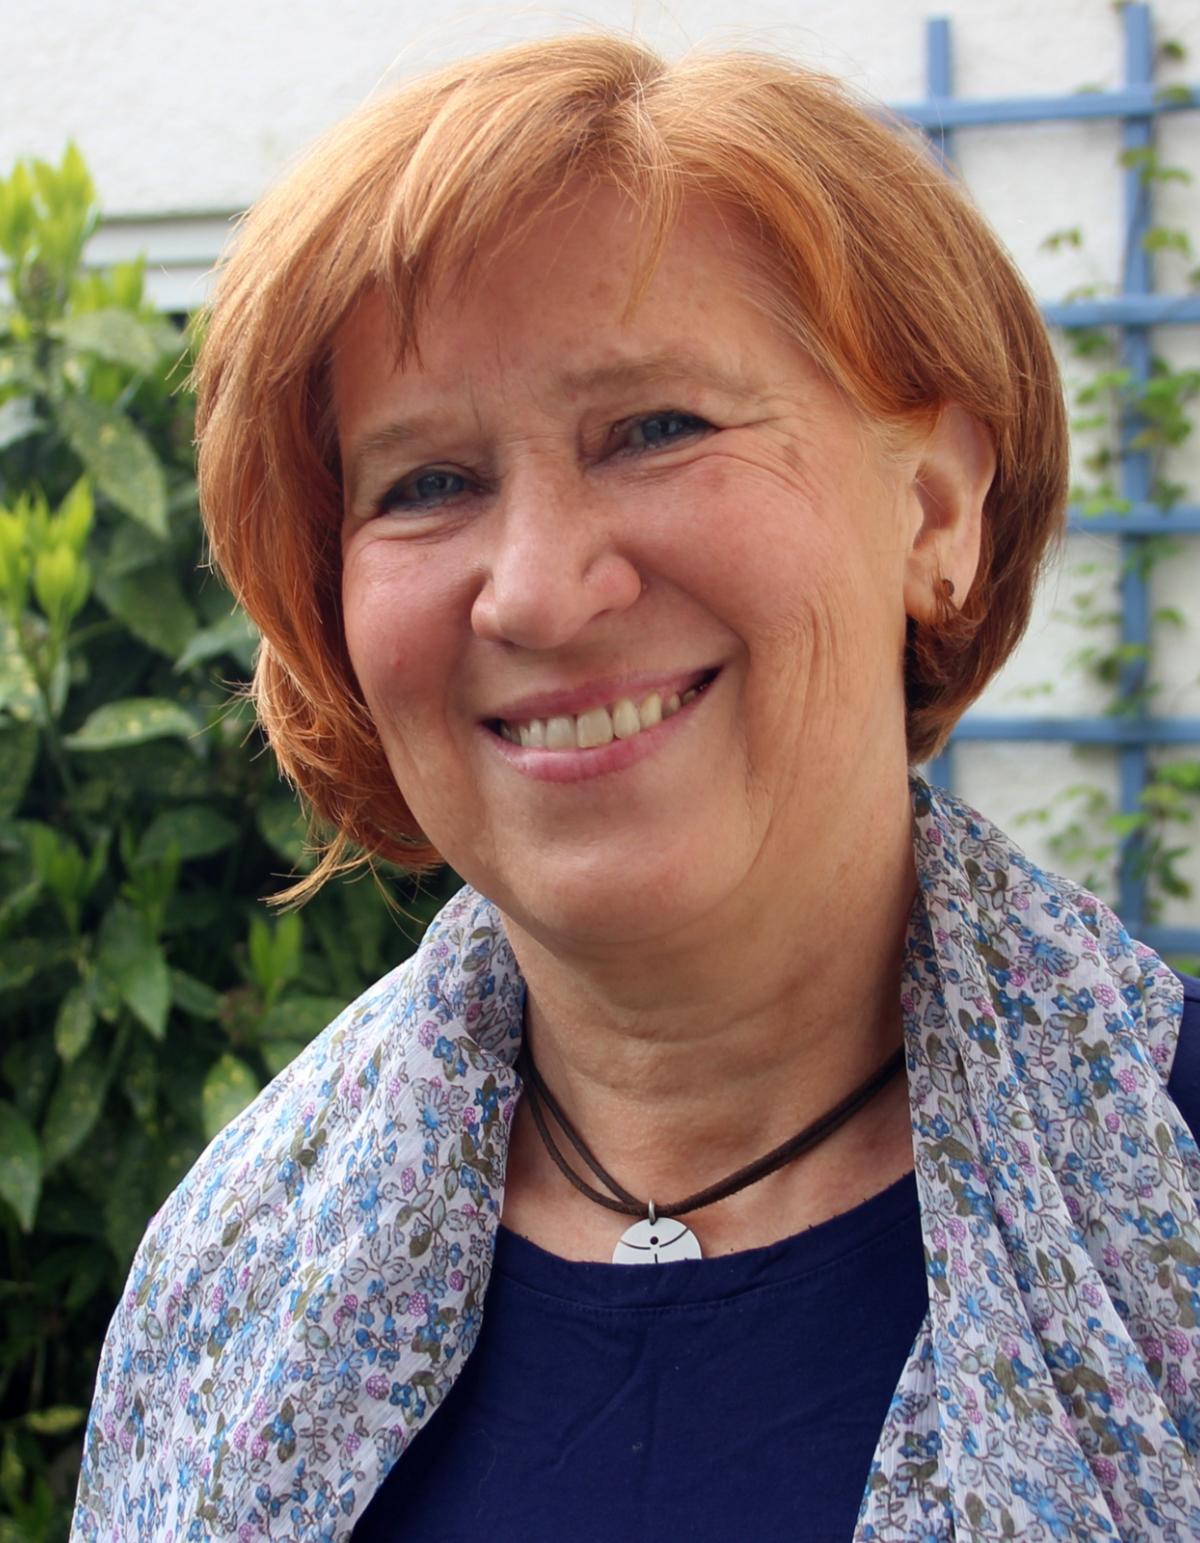 Sylvia Paszkiet